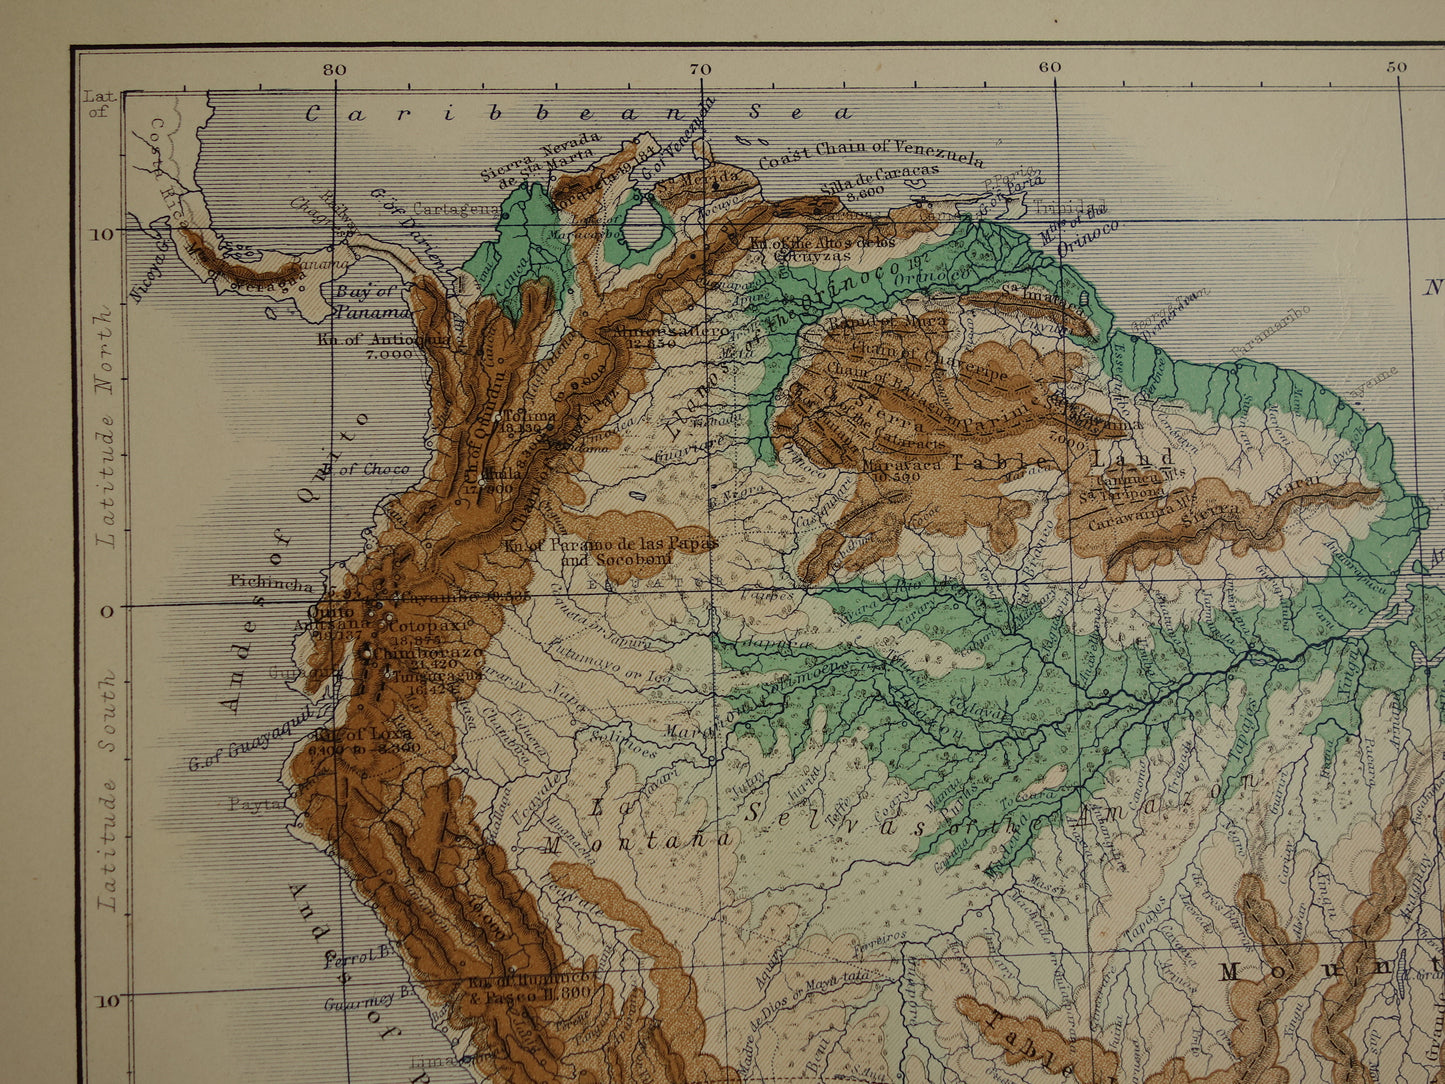 Zuid-Amerika antieke kaart van Zuid-Amerika 140+ jaar oude landkaart van continent uit 1879 - originele vintage hoogtekaart